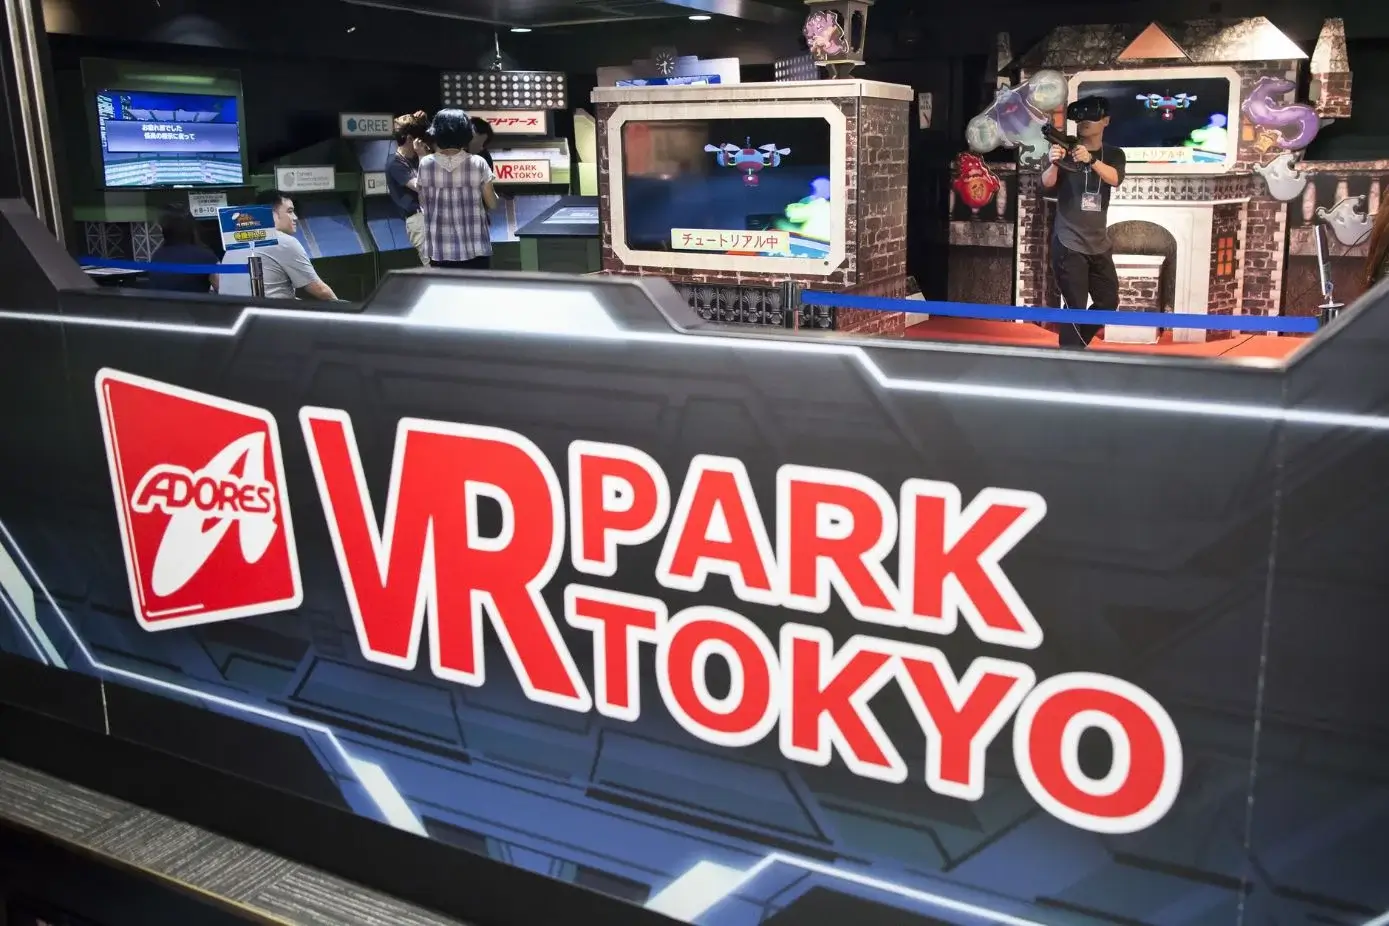 VR Park Tokyo